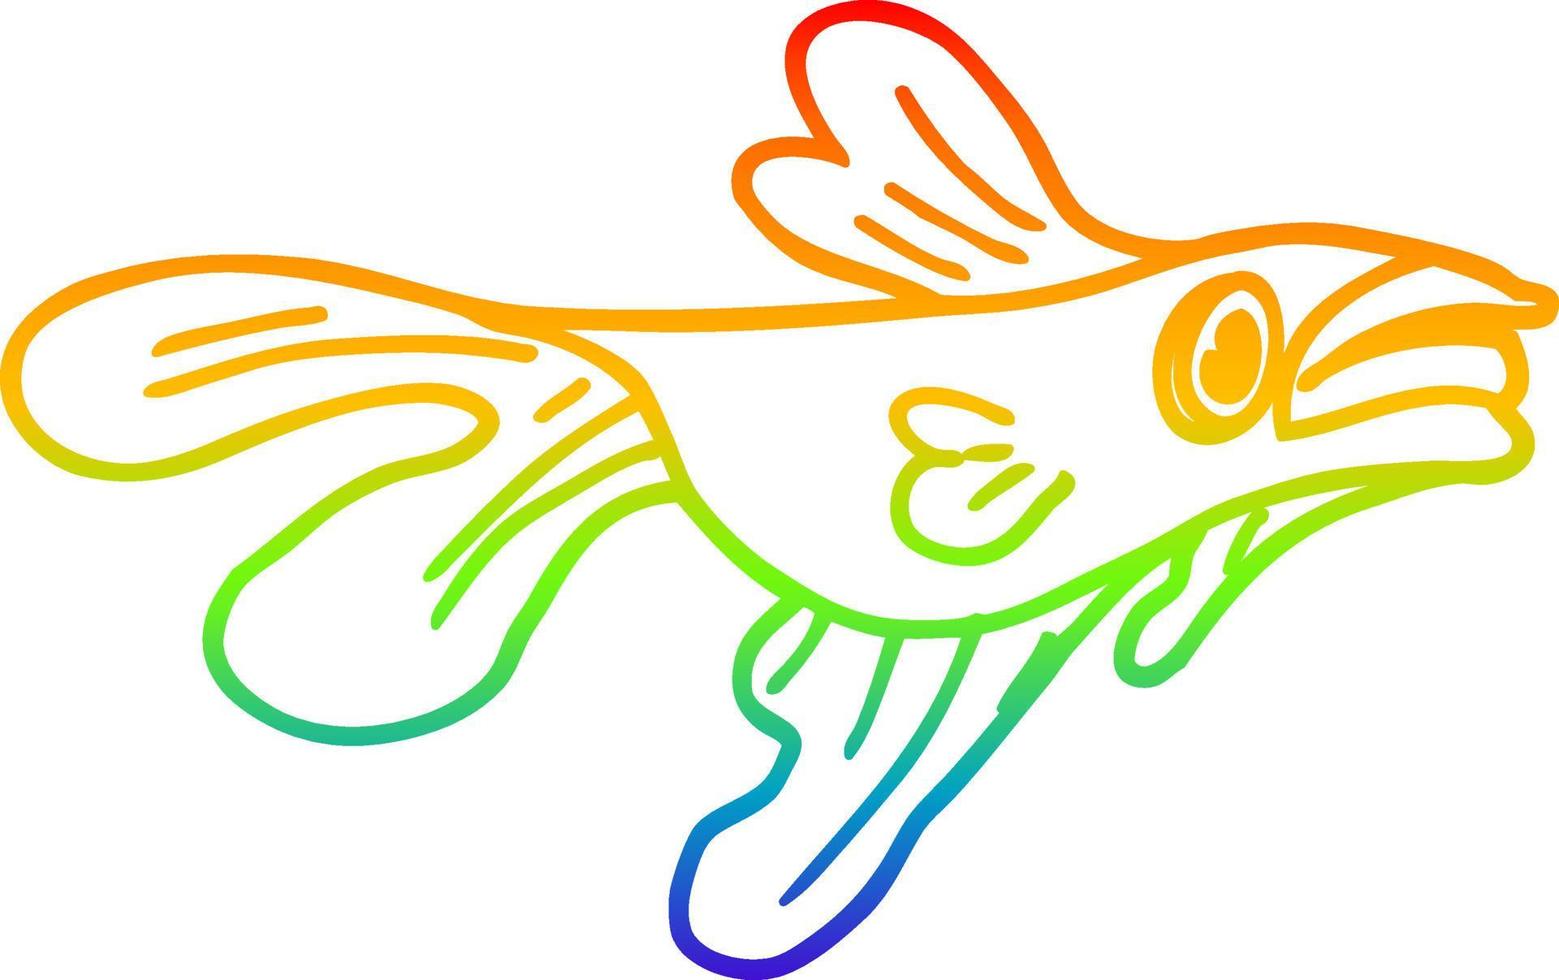 Regenbogen-Gradientenlinie, die Cartoon-Kampffische zeichnet vektor